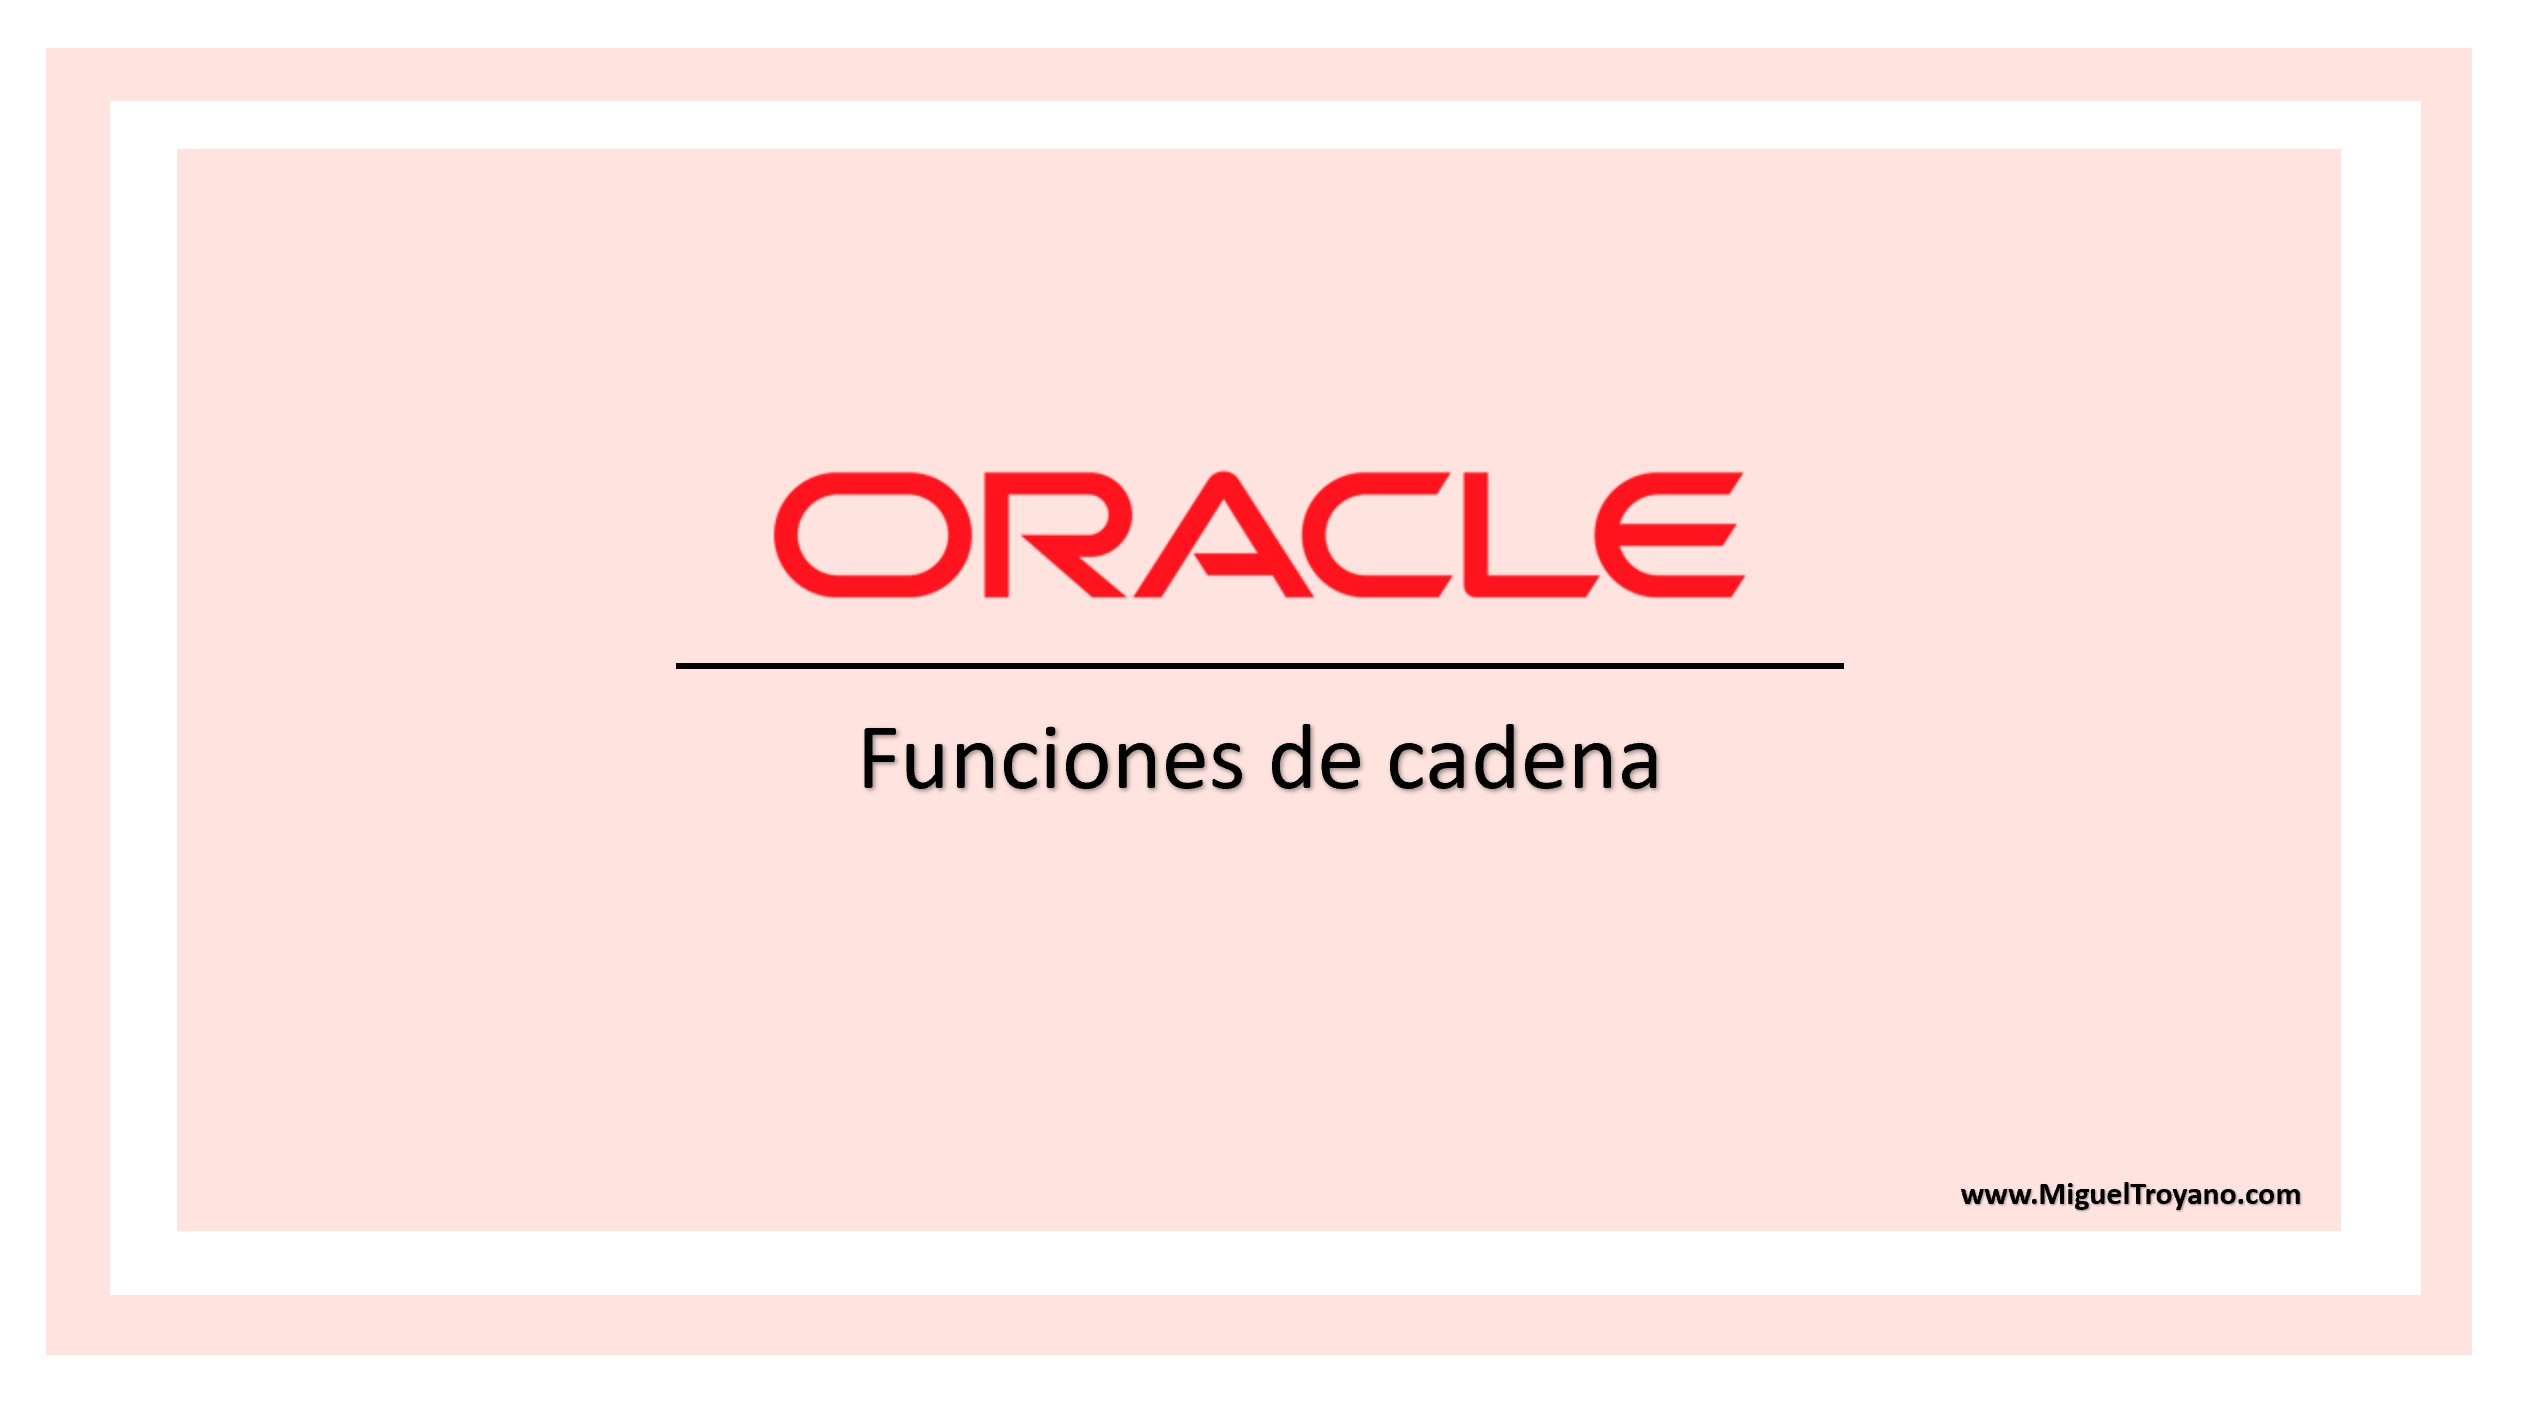 Funciones de cadena en Oracle